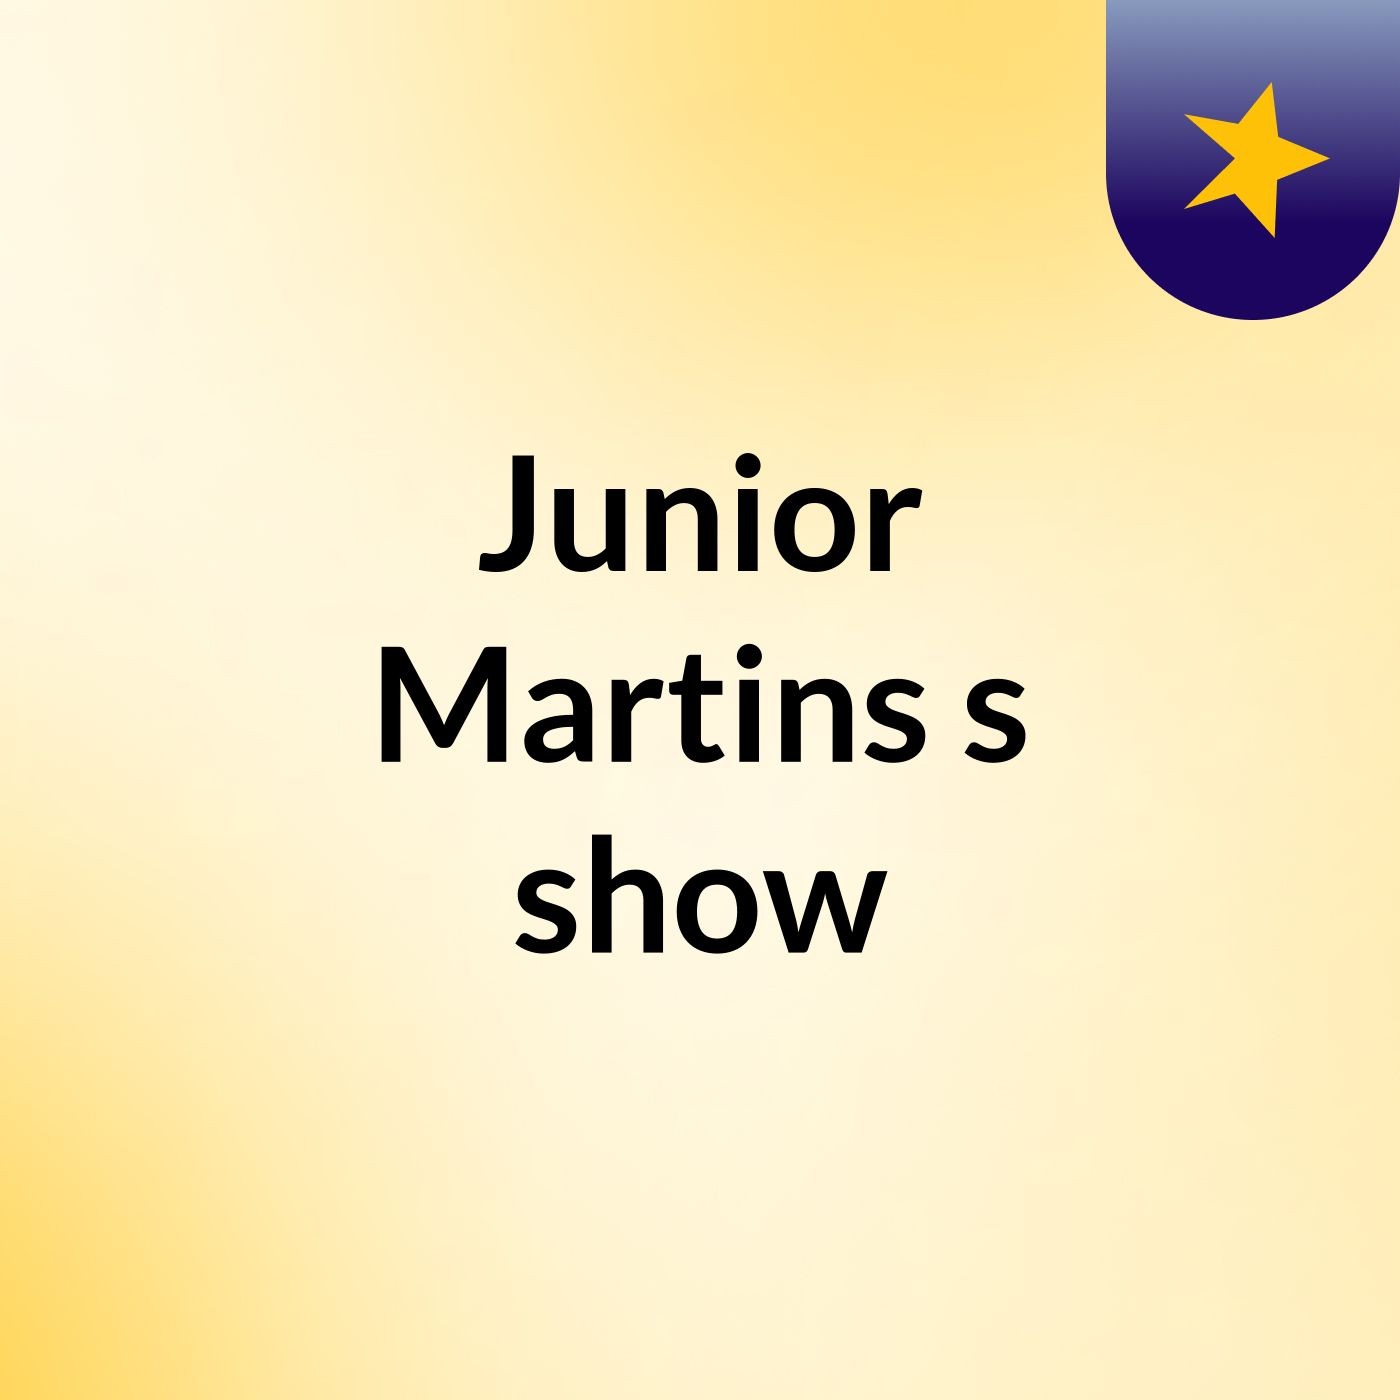 Junior Martins's show